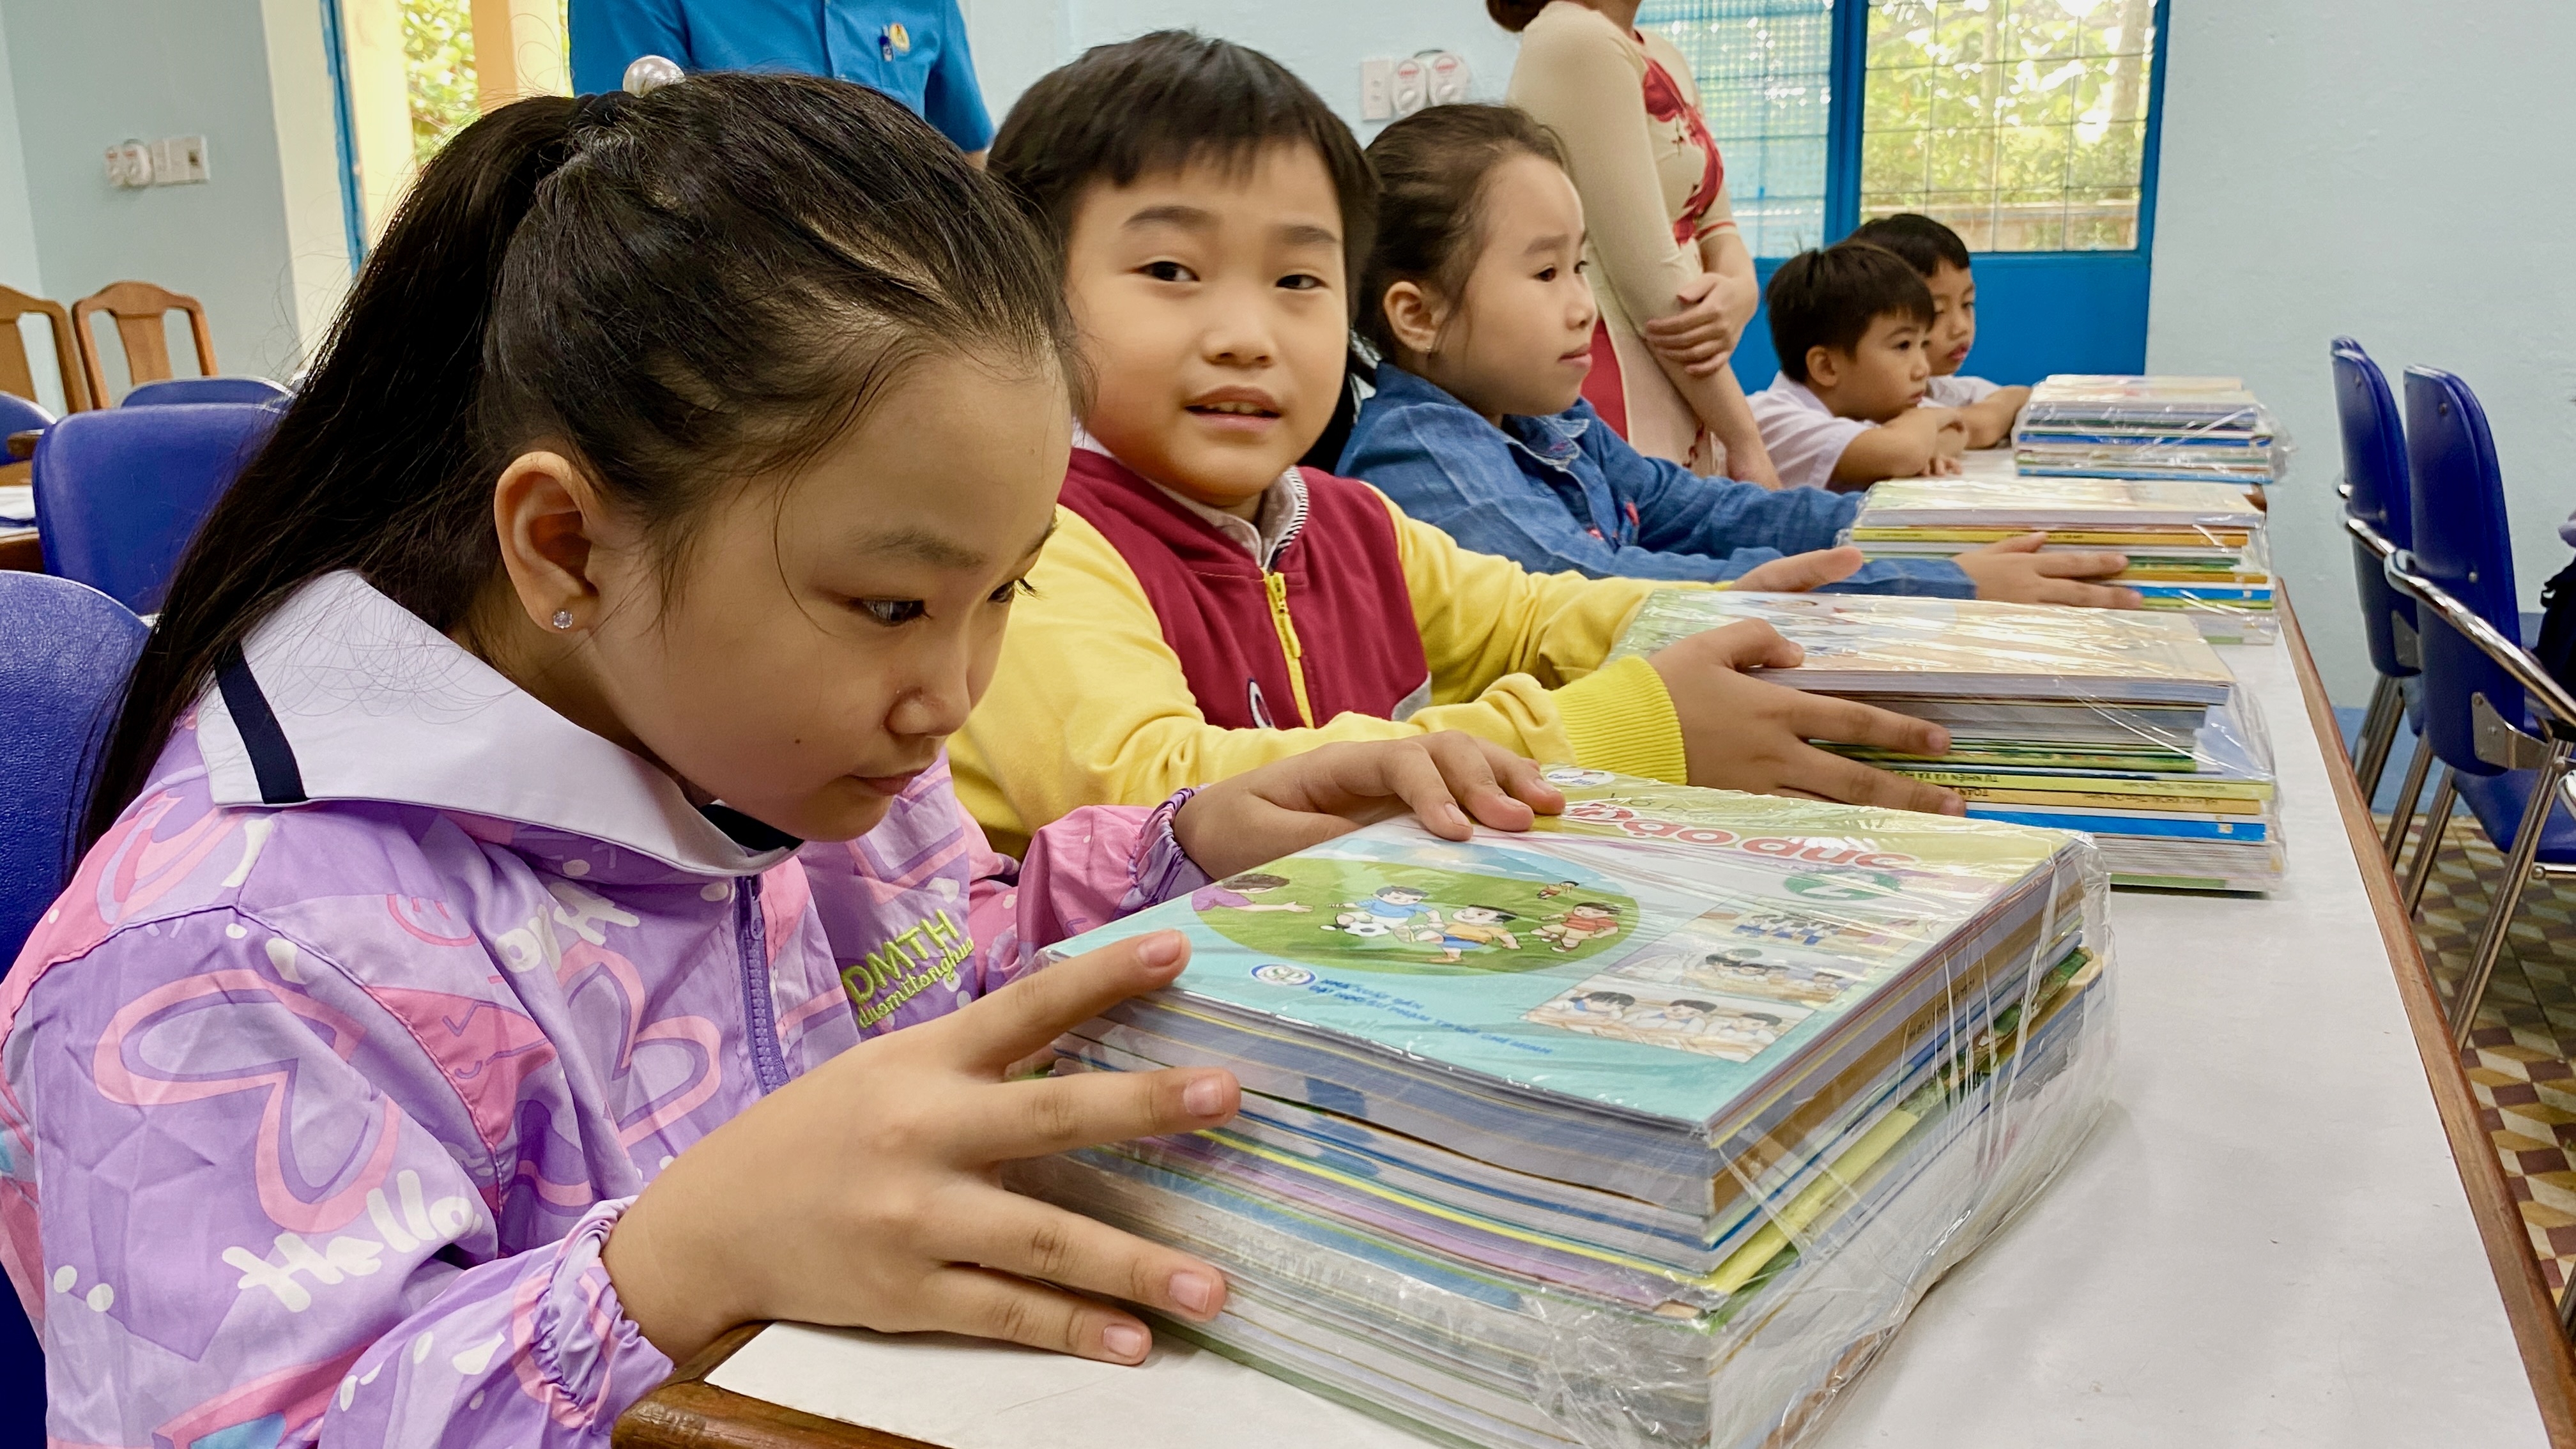 Đà Nẵng: Học sinh, giáo viên vui mừng khi Công đoàn hỗ trợ sách mới